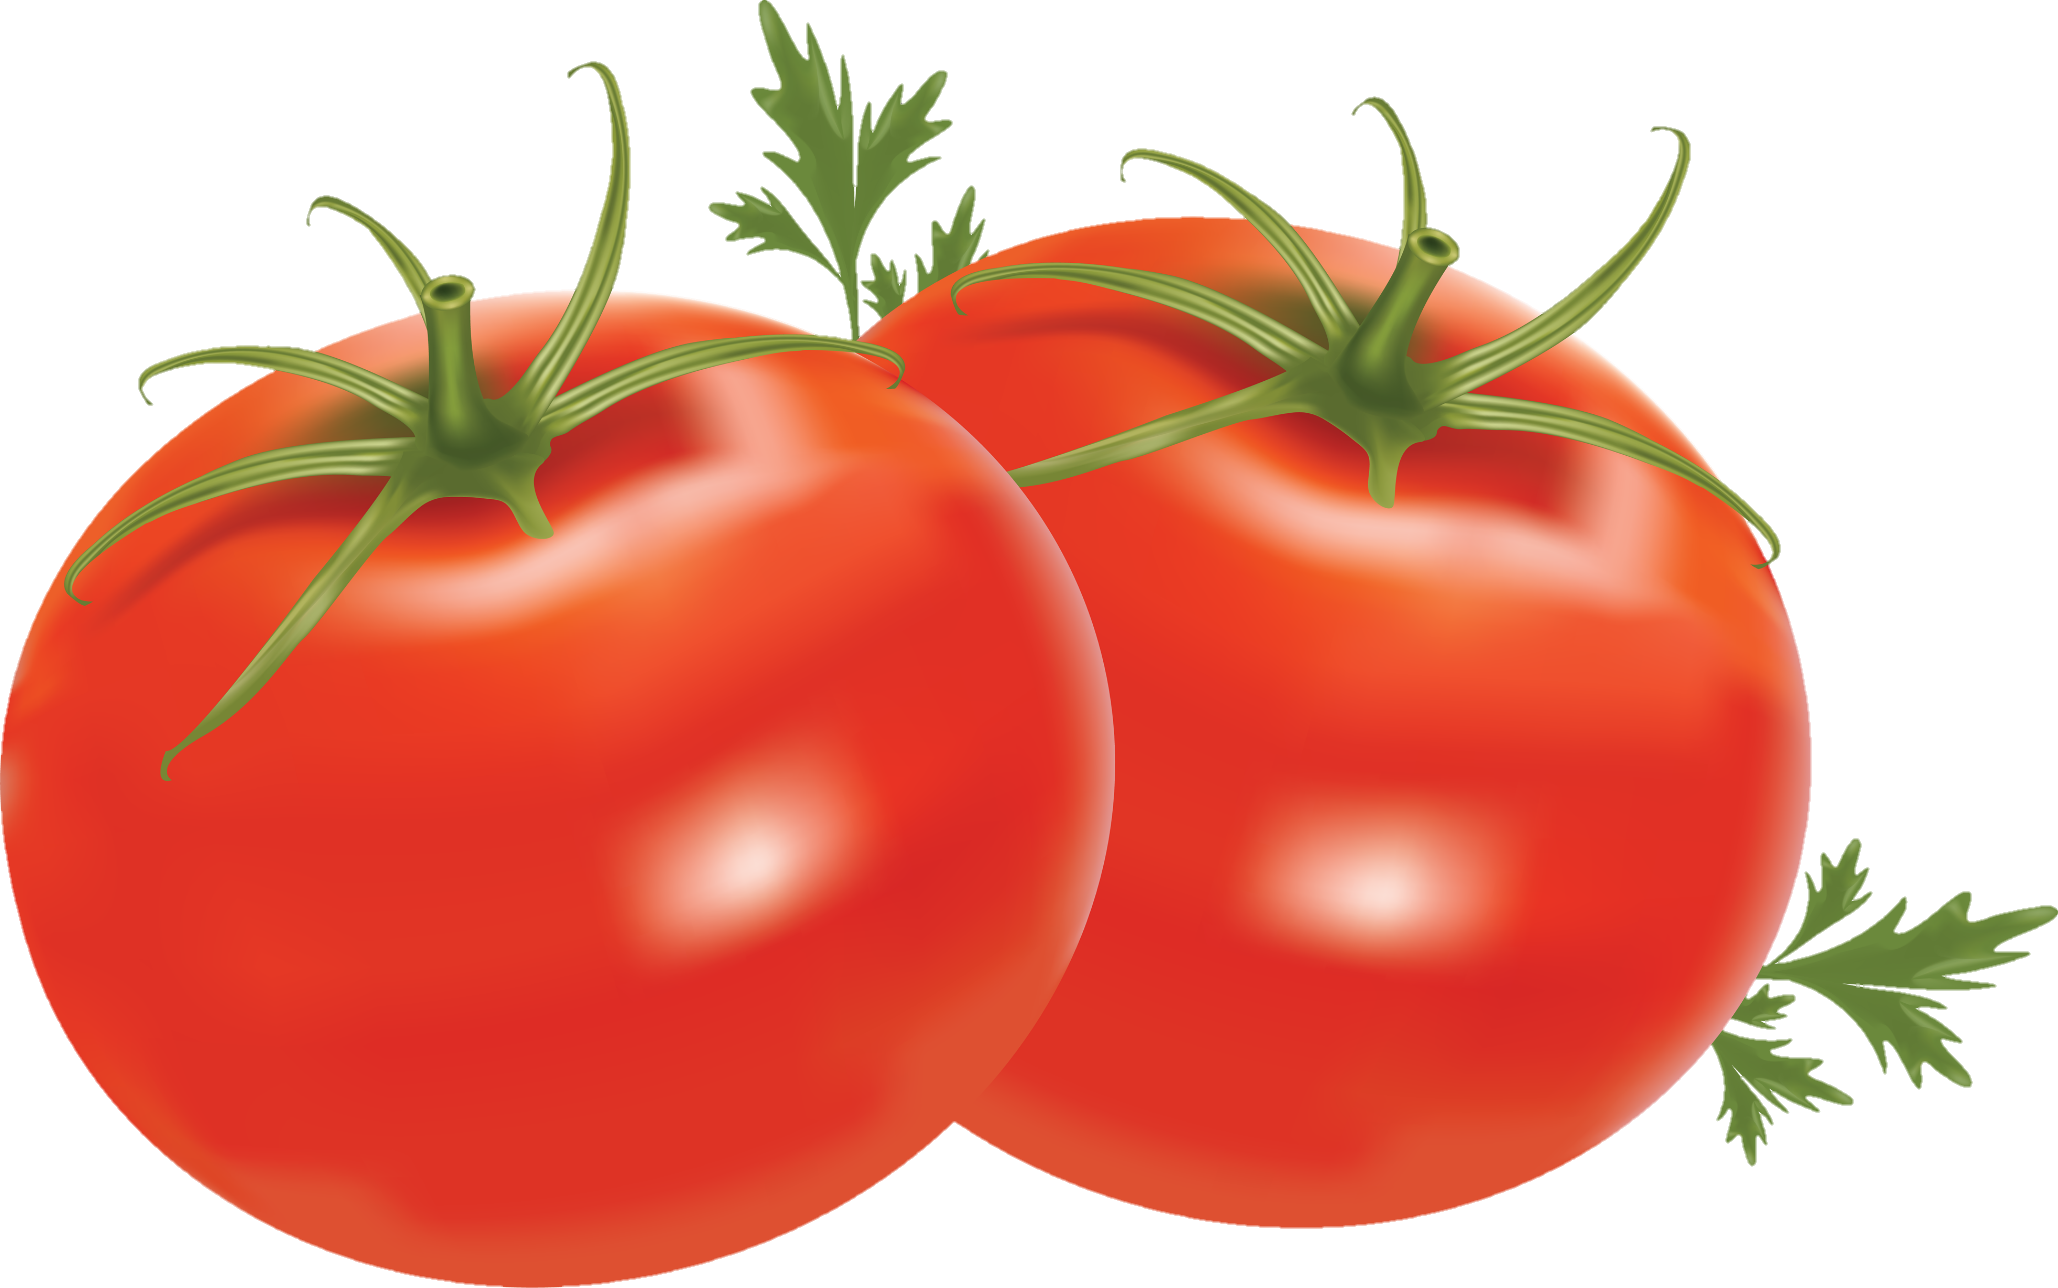 Tomato-24-2